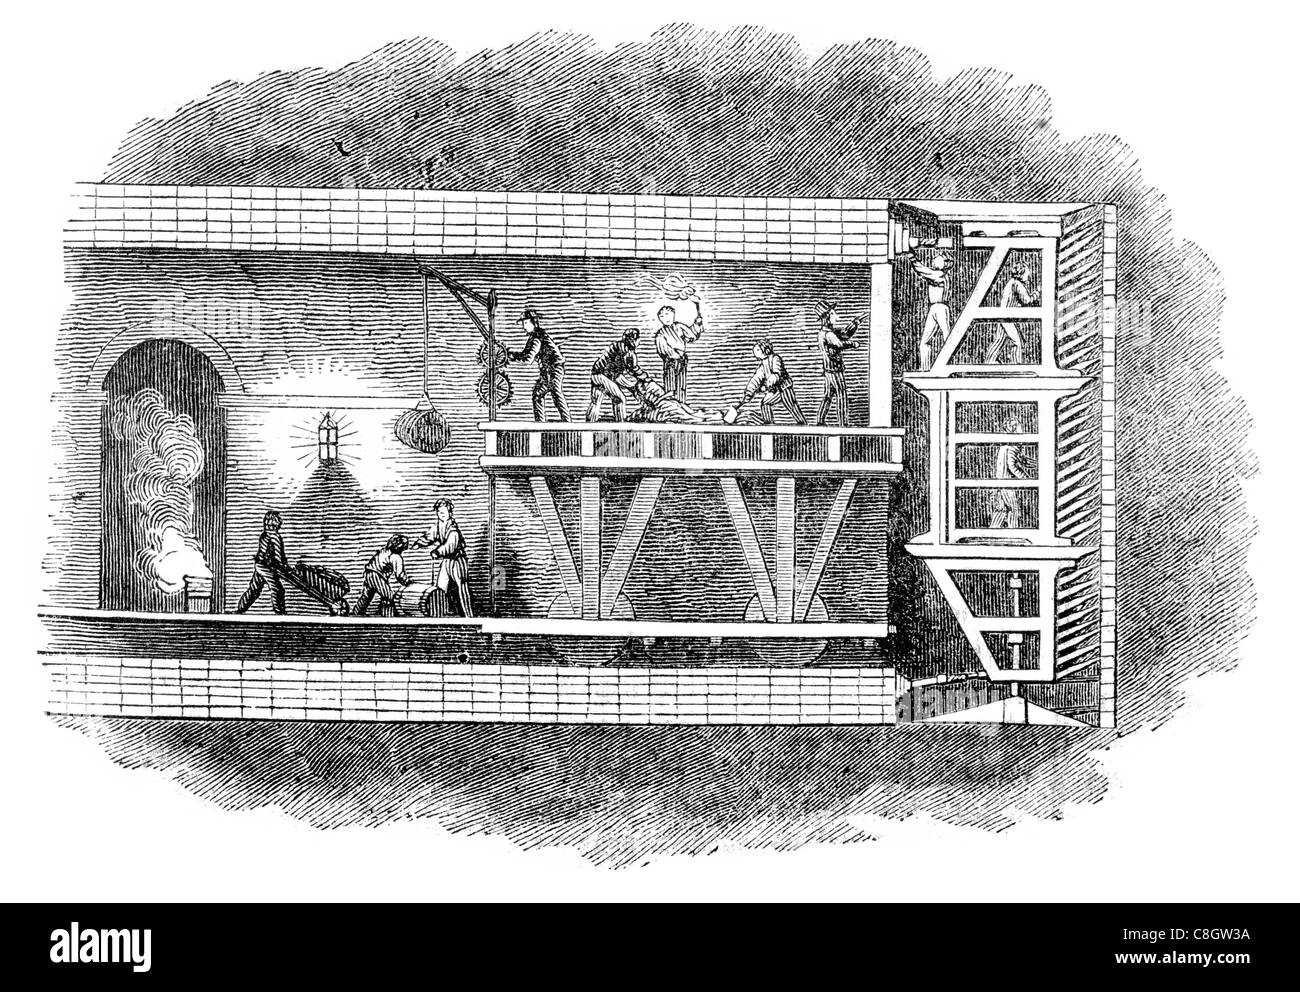 Aushub der Baugrube River Thames Tunnel Unterwasser London Vereinigtes Königreich Rotherhithe Wapping Isambard Brunel Stockfoto